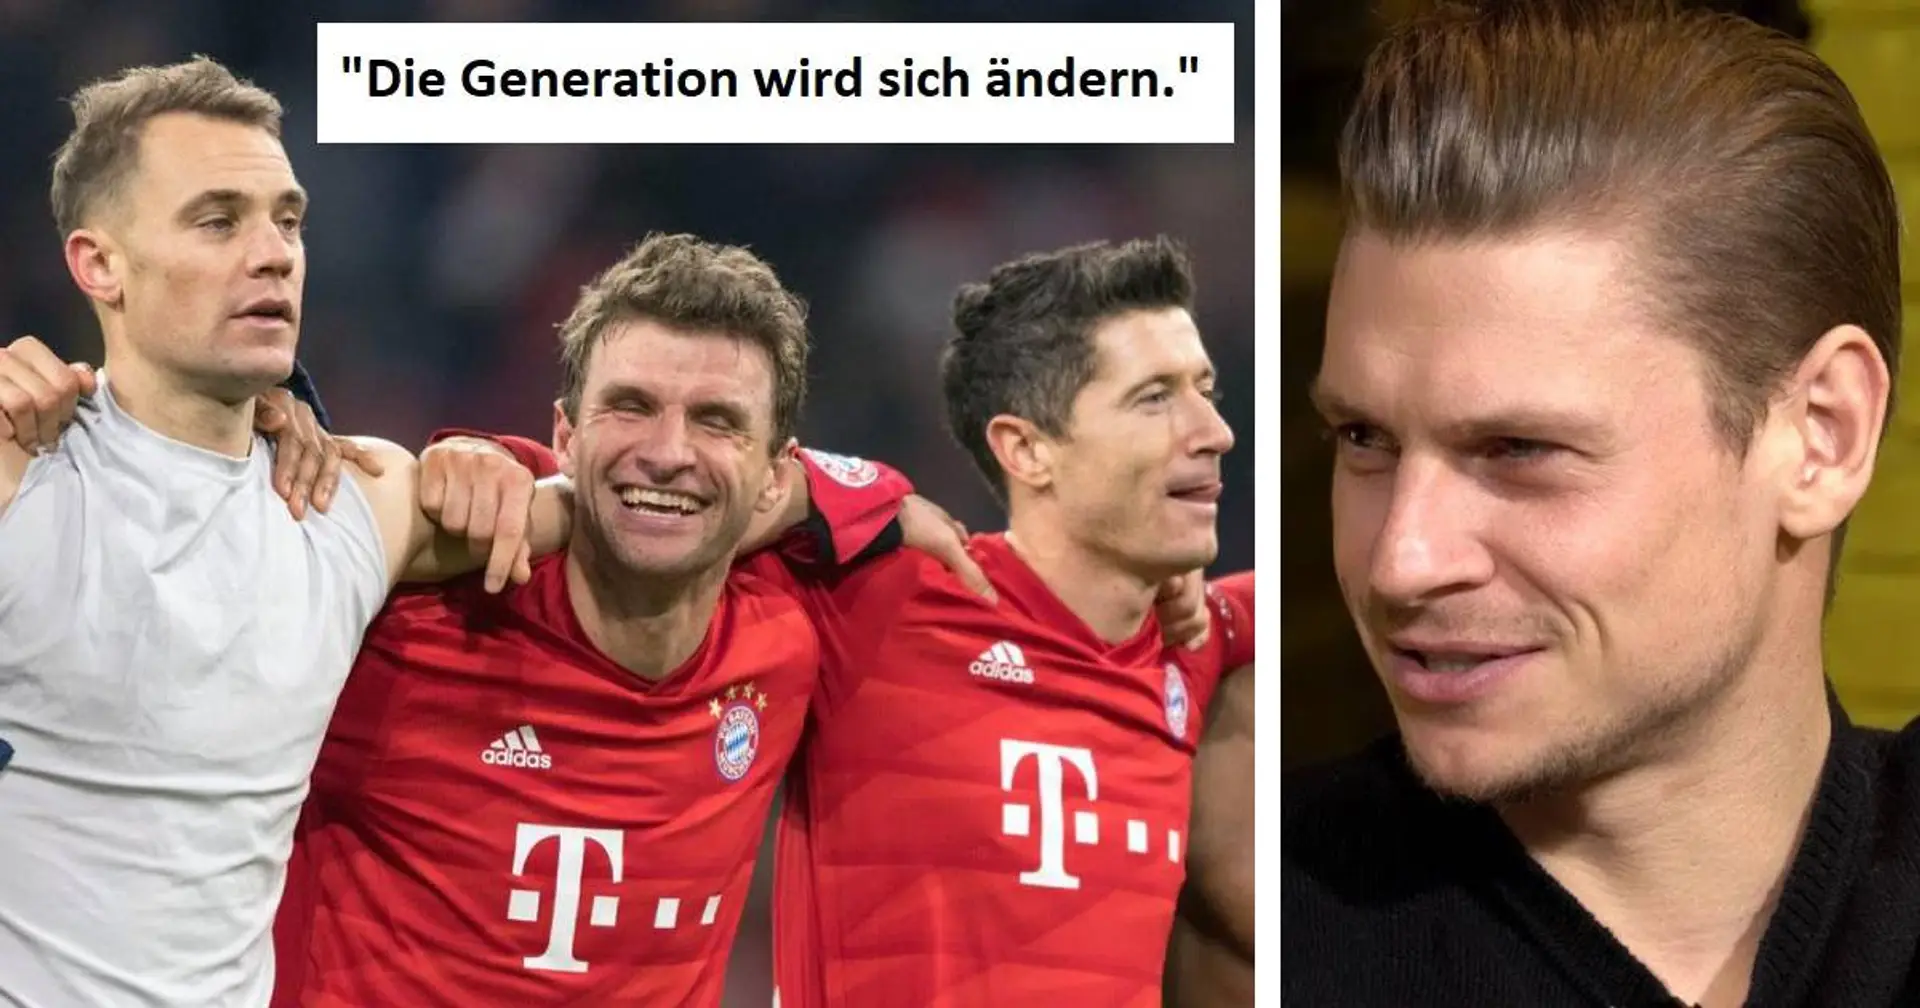 Piszczek: Wenn Neuer, Müller und Lewandowski Bayern verlassen, könnte Dortmund gute Titelchancen haben